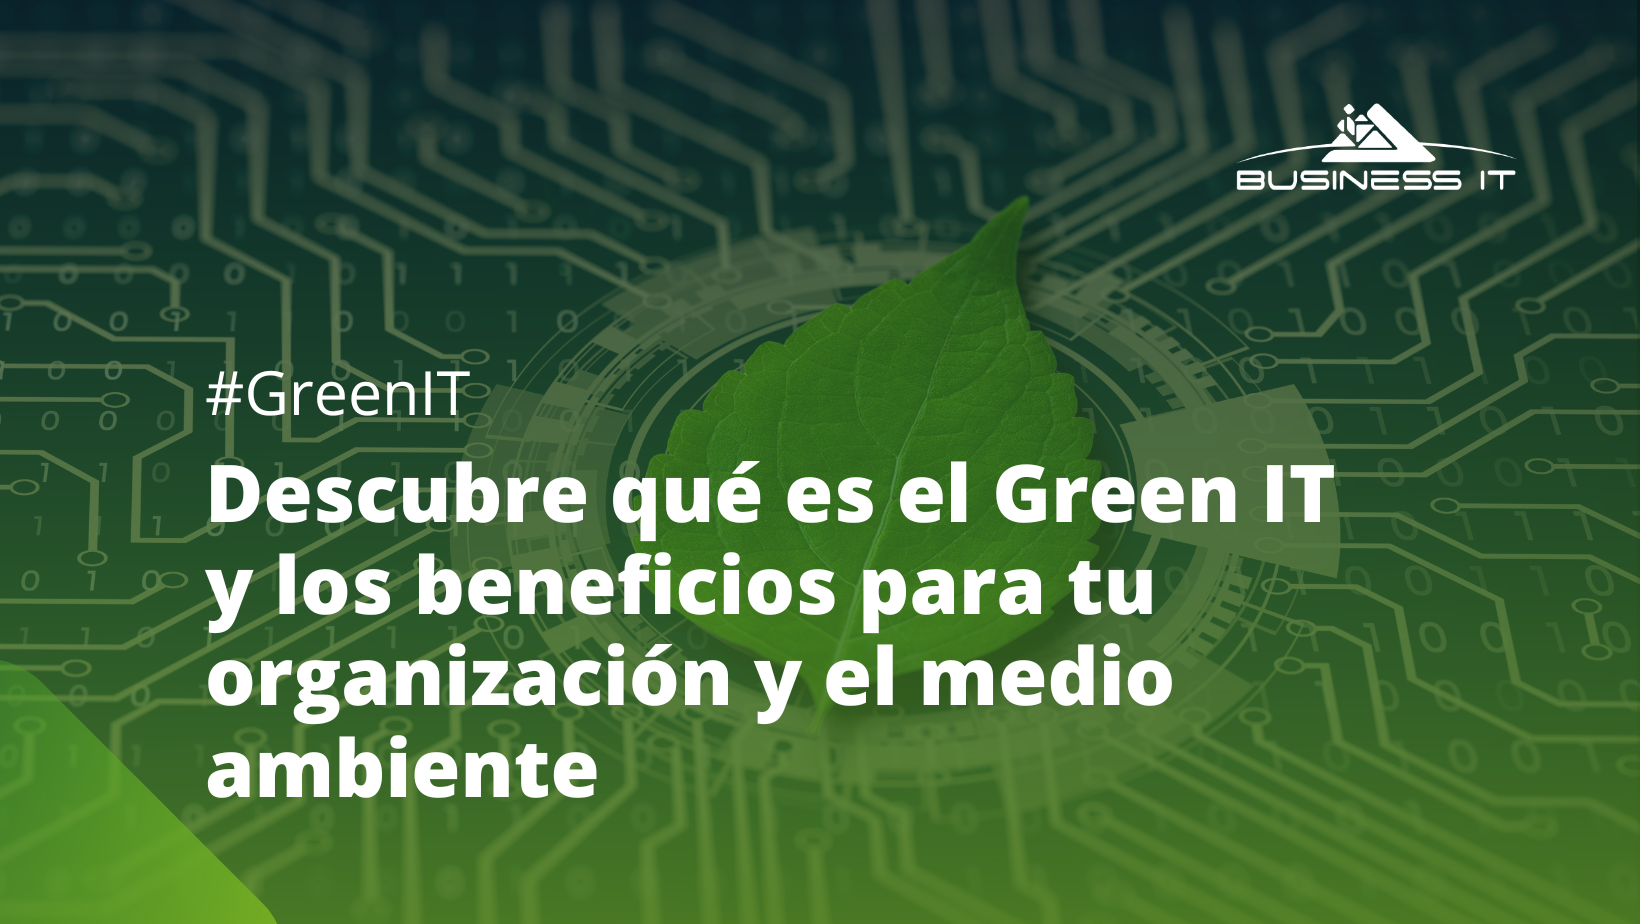 ¡La tecnología verde que optimiza los recursos de tu organización!